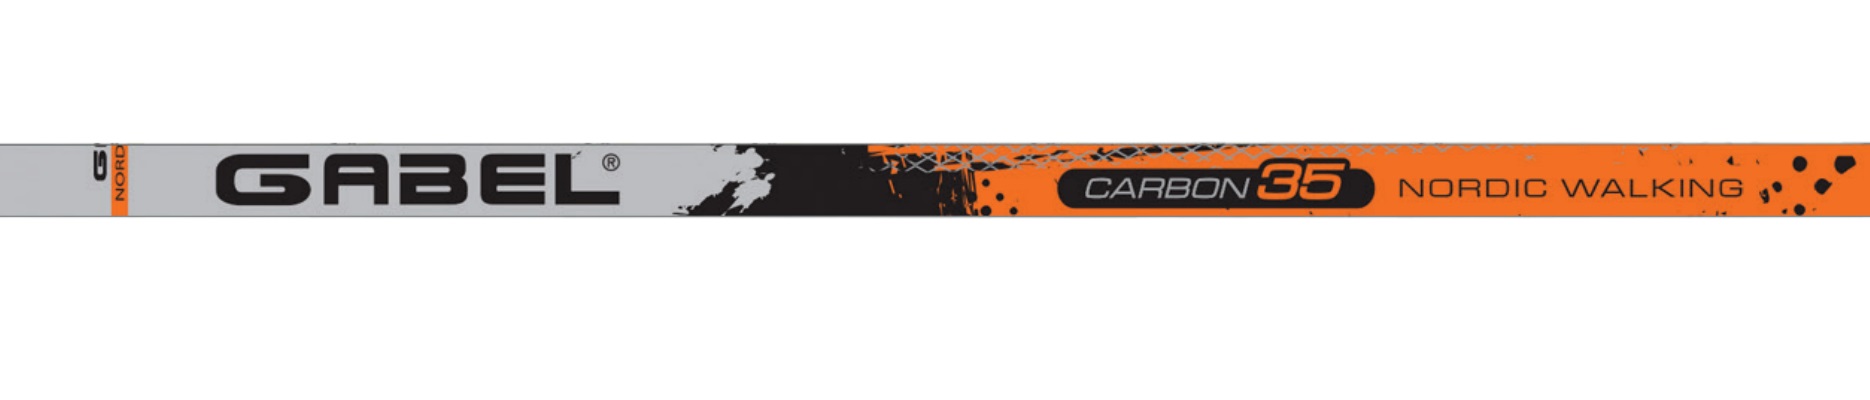 Ultralehké hůlky Gabel Stride X-1.35 jsou vyrobeny ze 7 karbonových vrstev CA35 s téměř neomezenou životností a jsou speciálně určené pro severskou chůzi (takzvaný Nordic Walking).